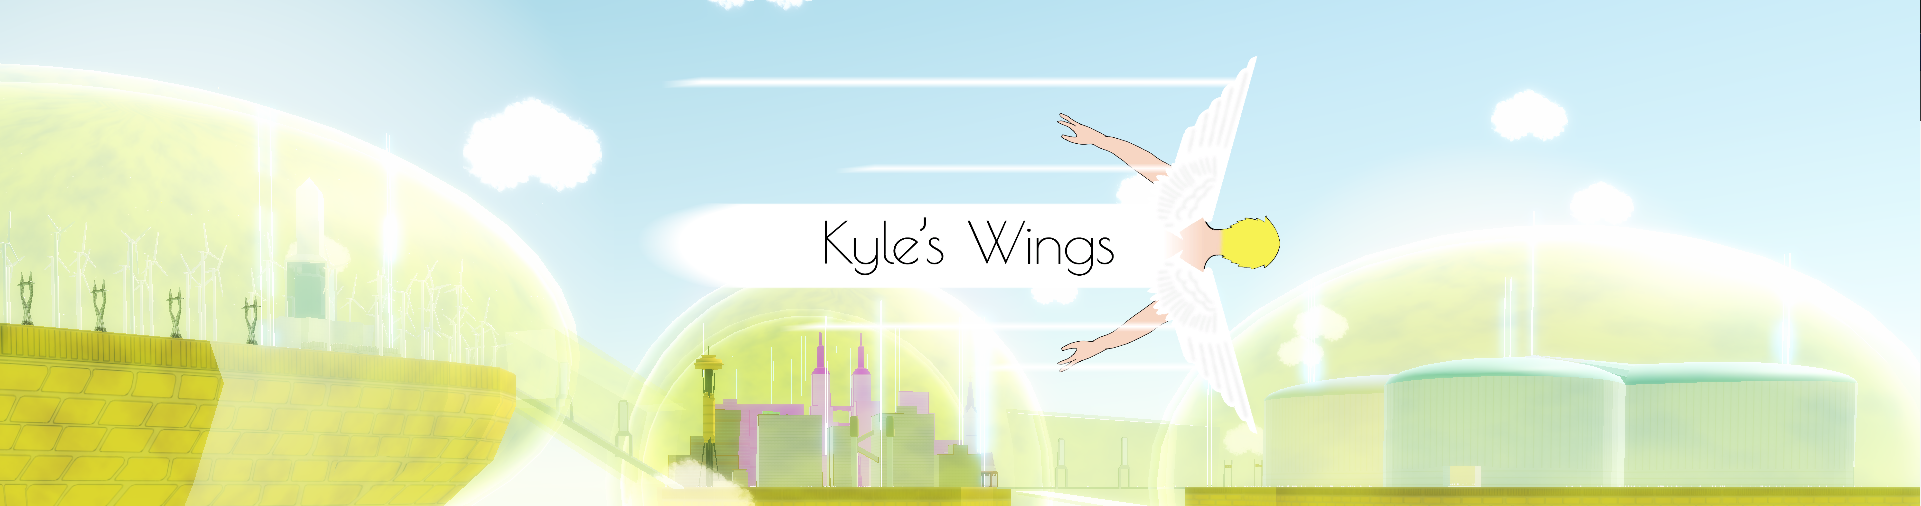 Kyle's Wings